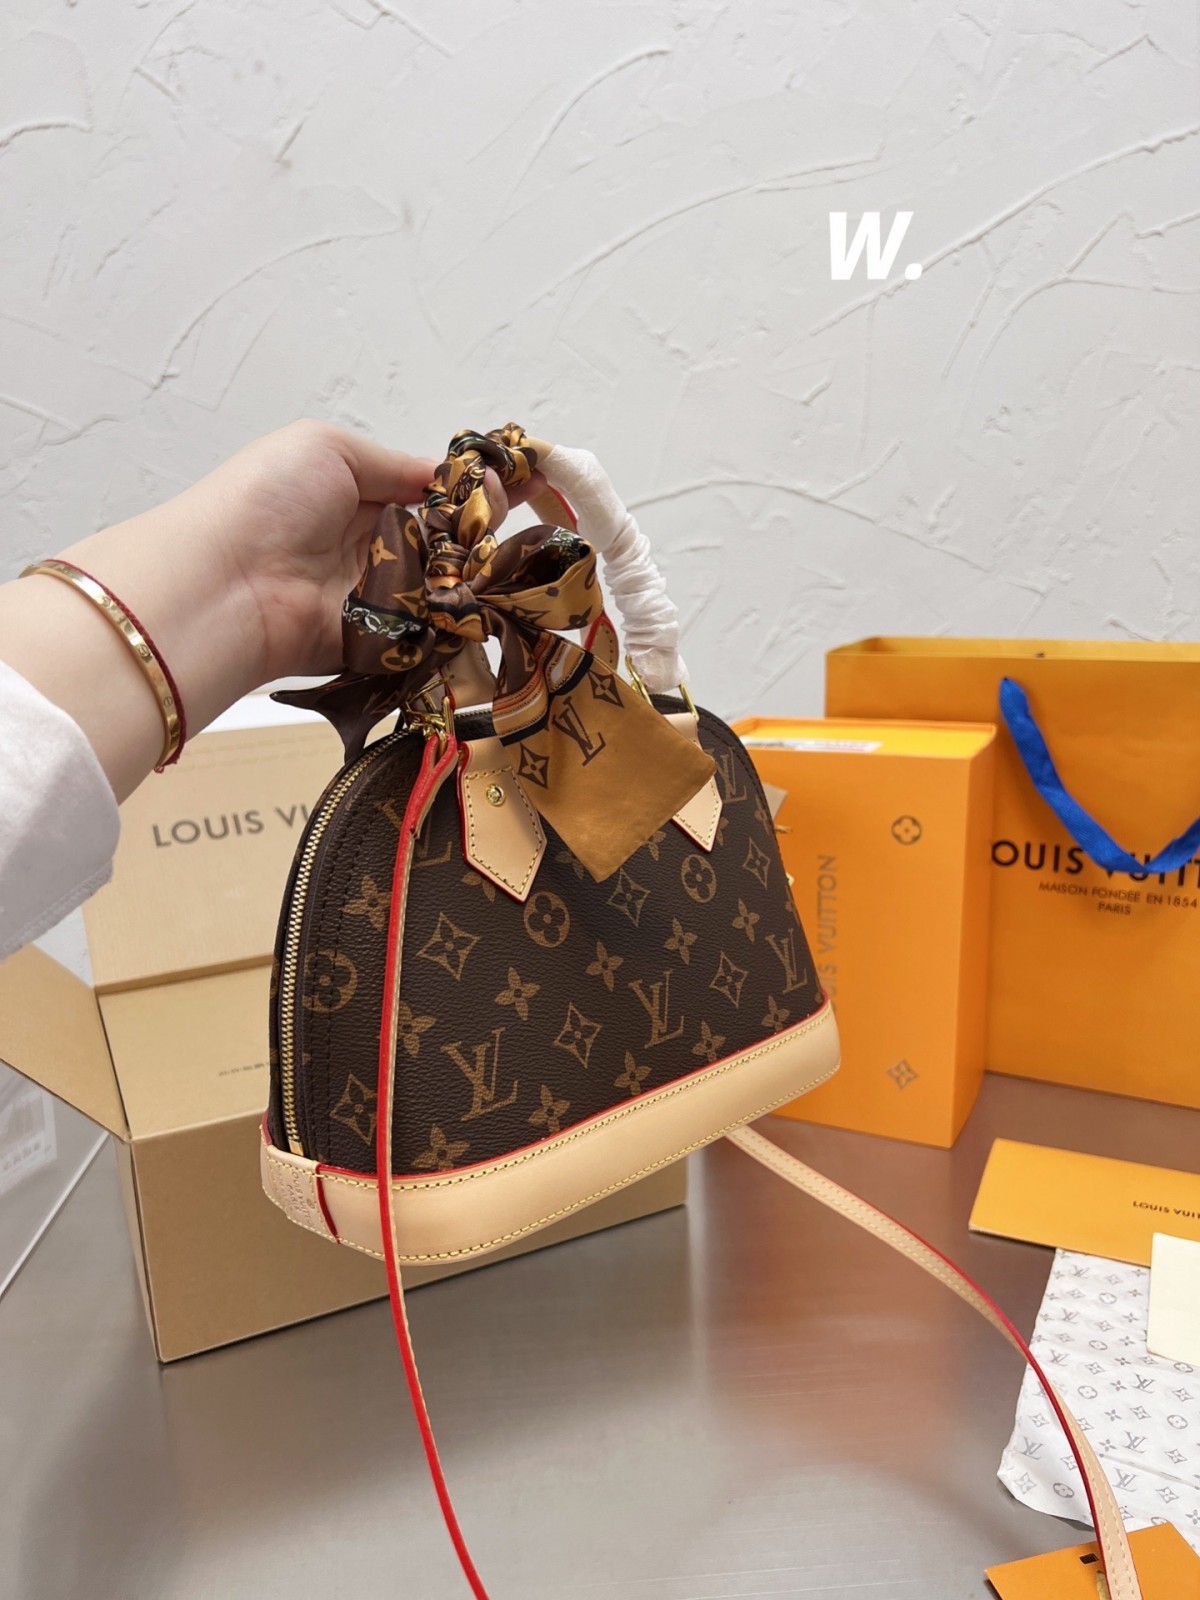 Do you like this Louis Vuitton Alma BB replica bag? (2022 Latest)-Best Quality Fake designer Bag Review, Replica designer bag ru